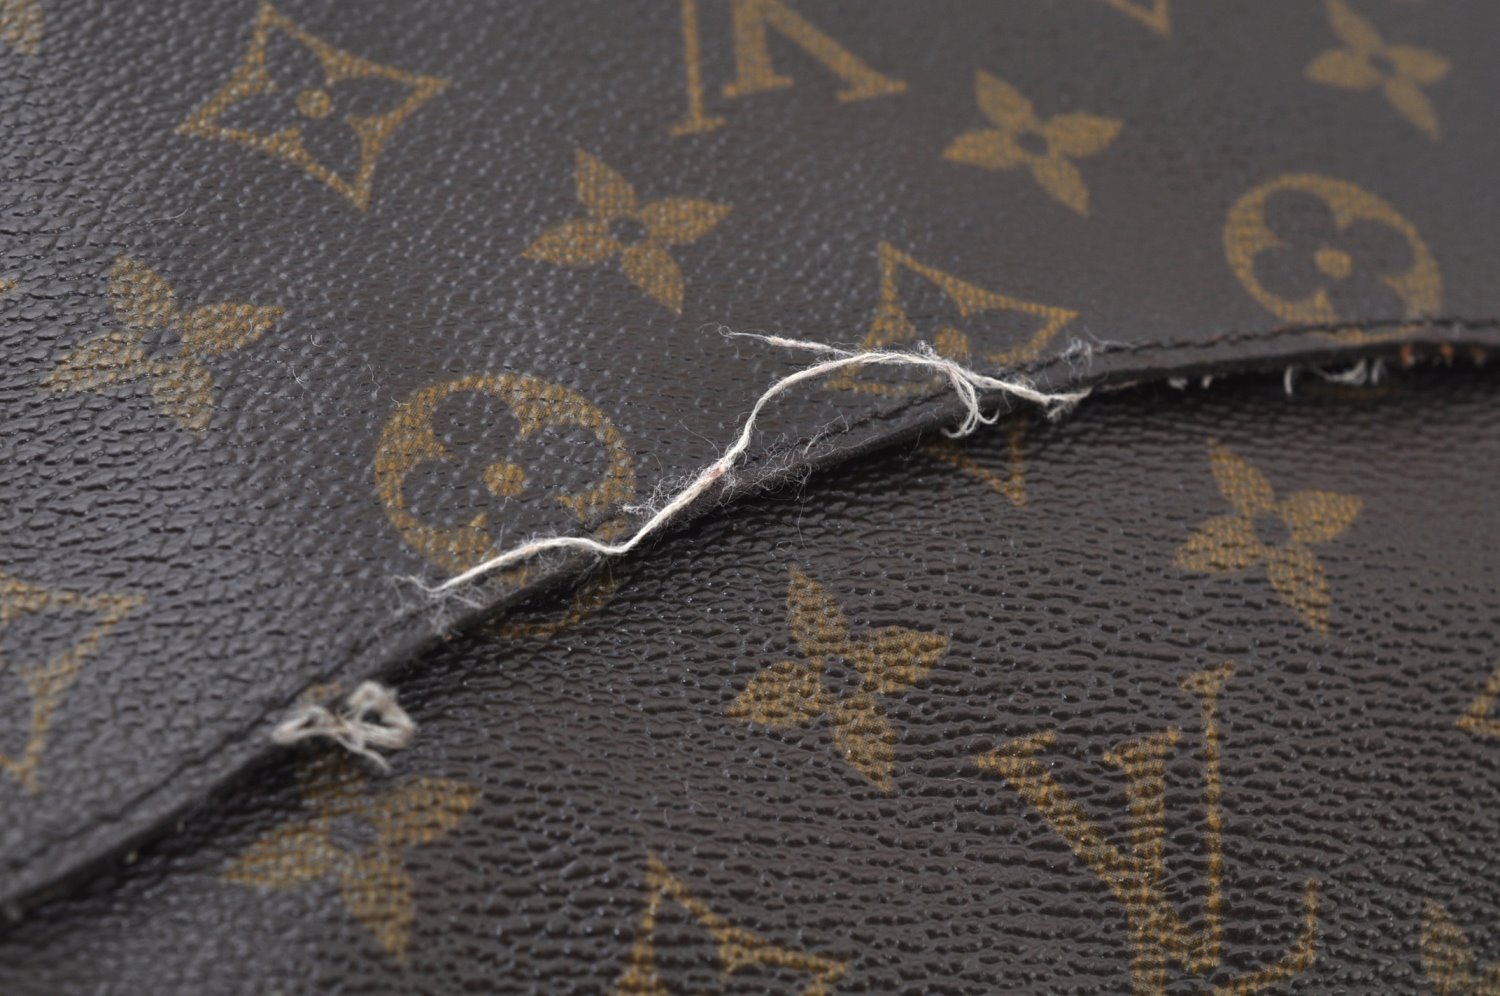 Authentic Louis Vuitton Monogram Saint Cloud GM M51242 Shoulder Cross Bag K5325